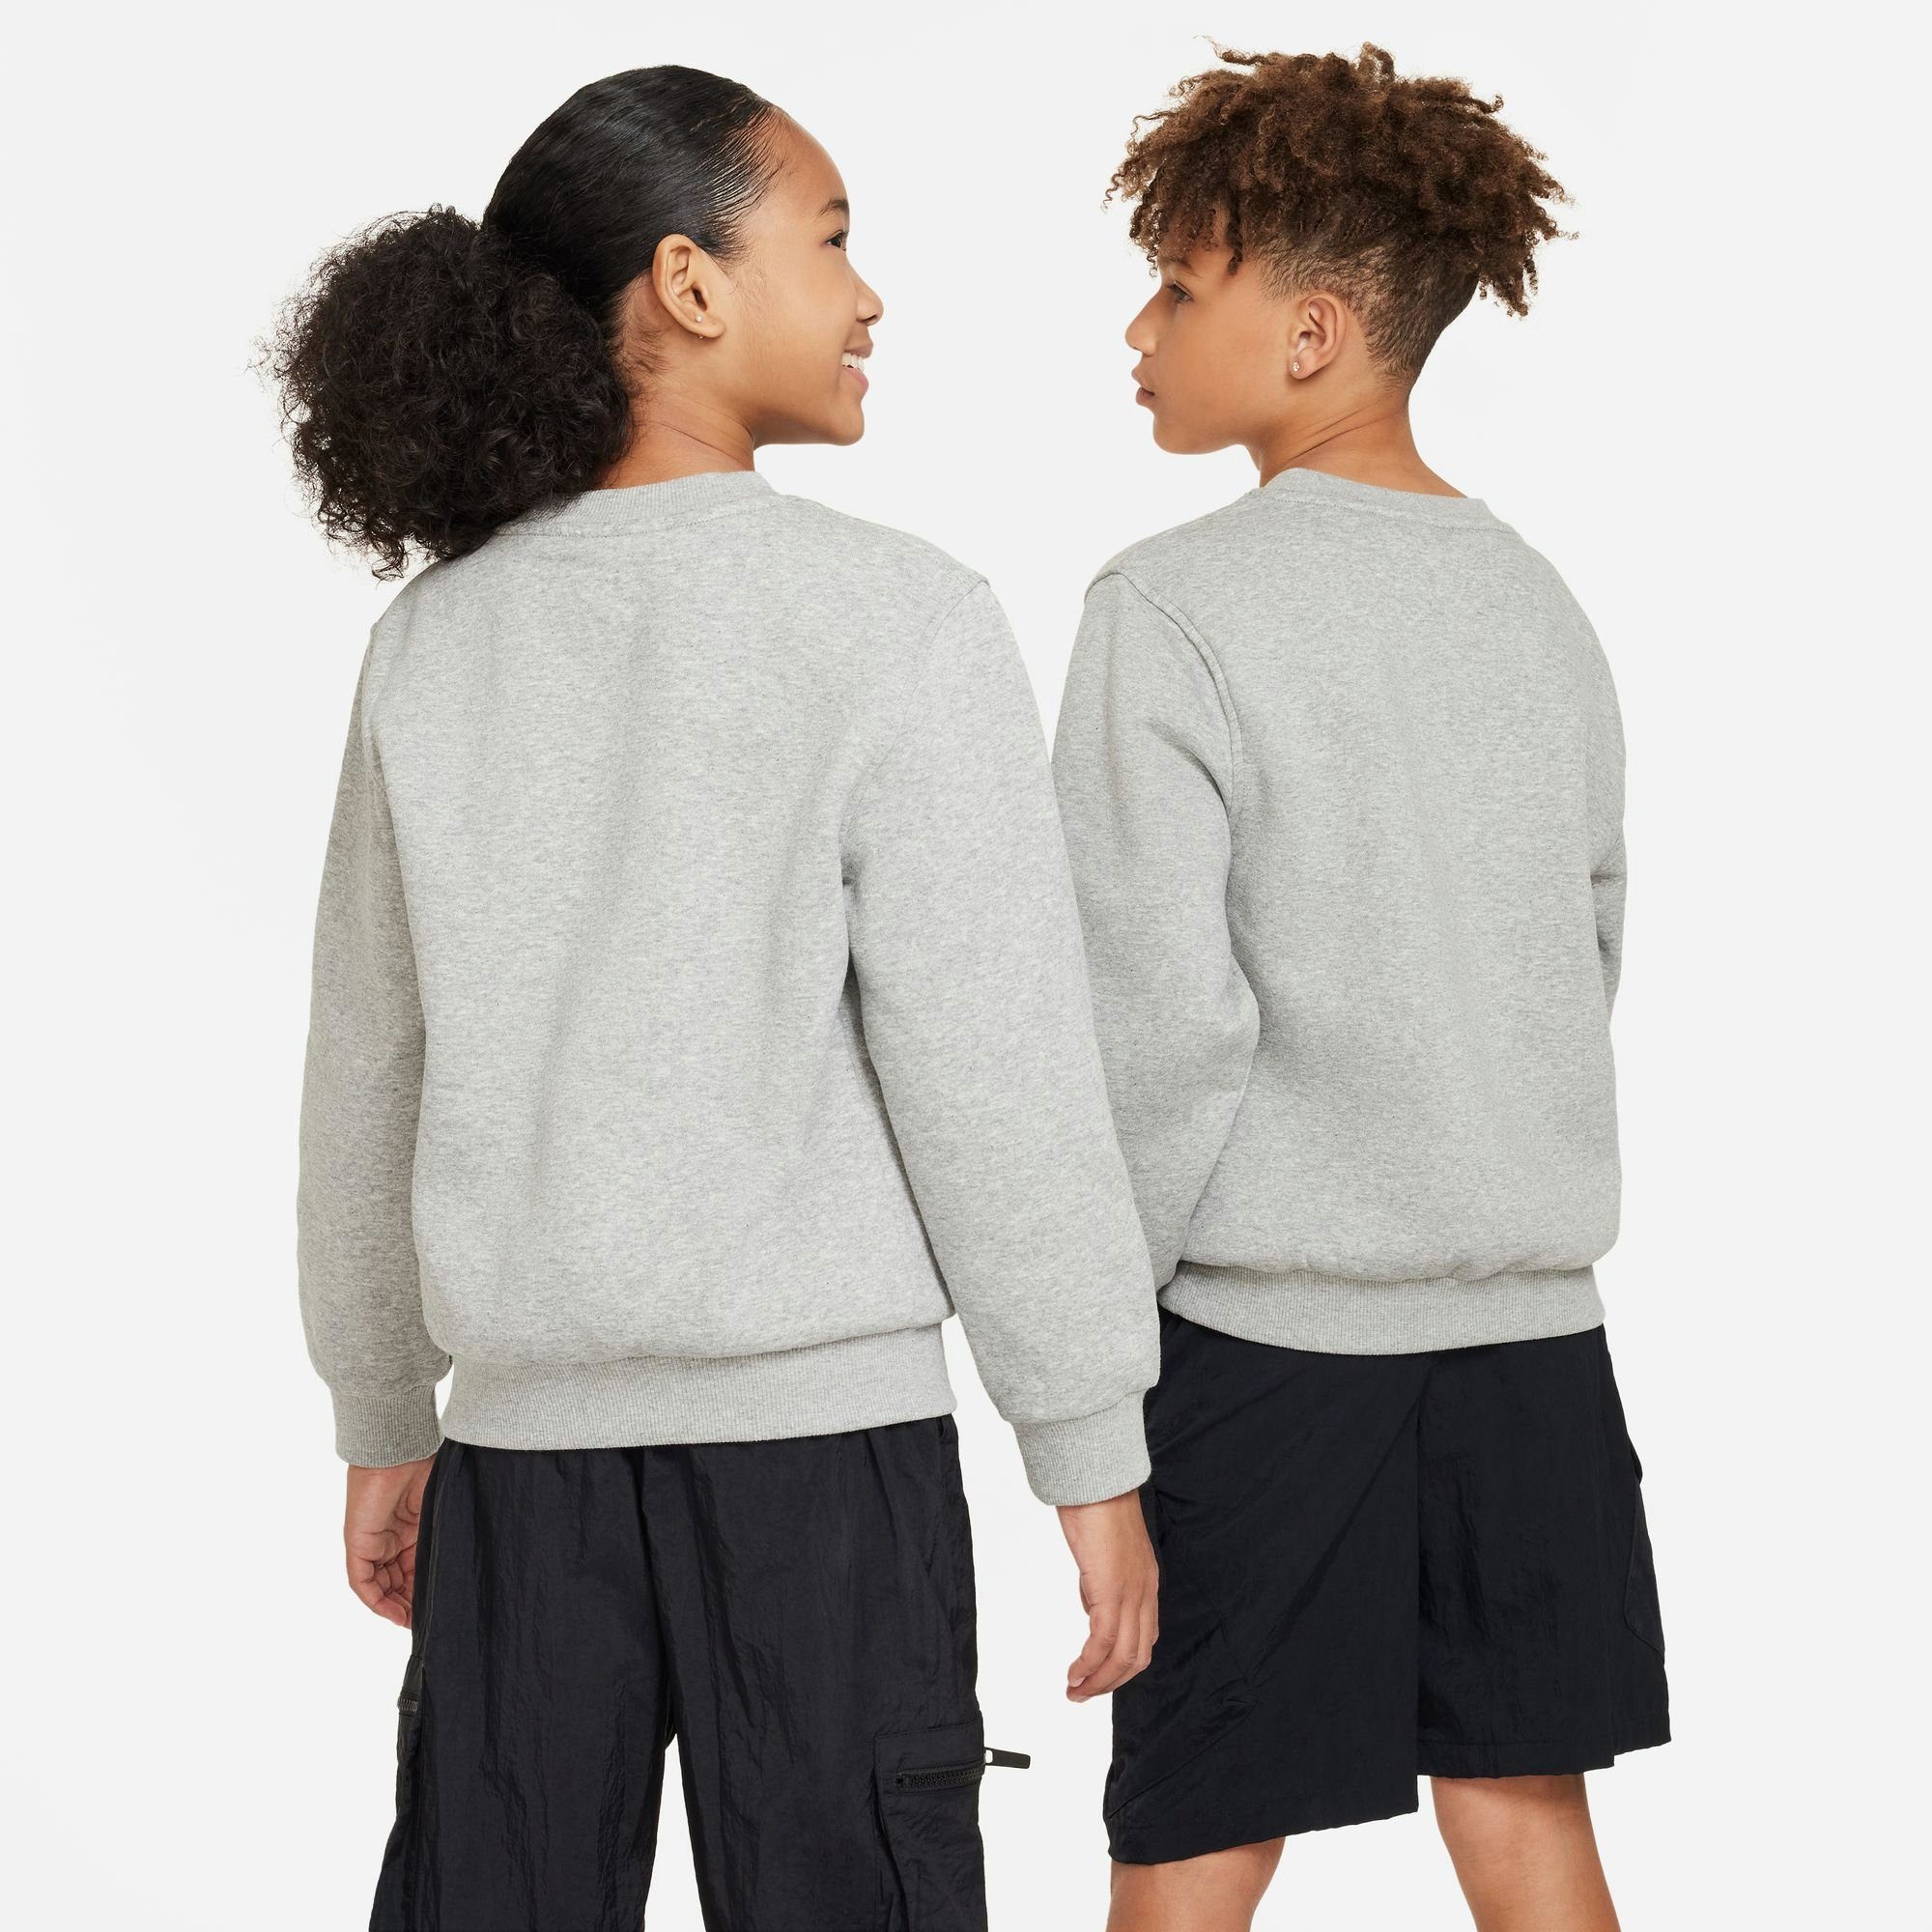 Sweatshirt HEATHER/WHITE GREY KIDS' FLEECE Sportswear DK BIG Nike CLUB SWEATSHIRT